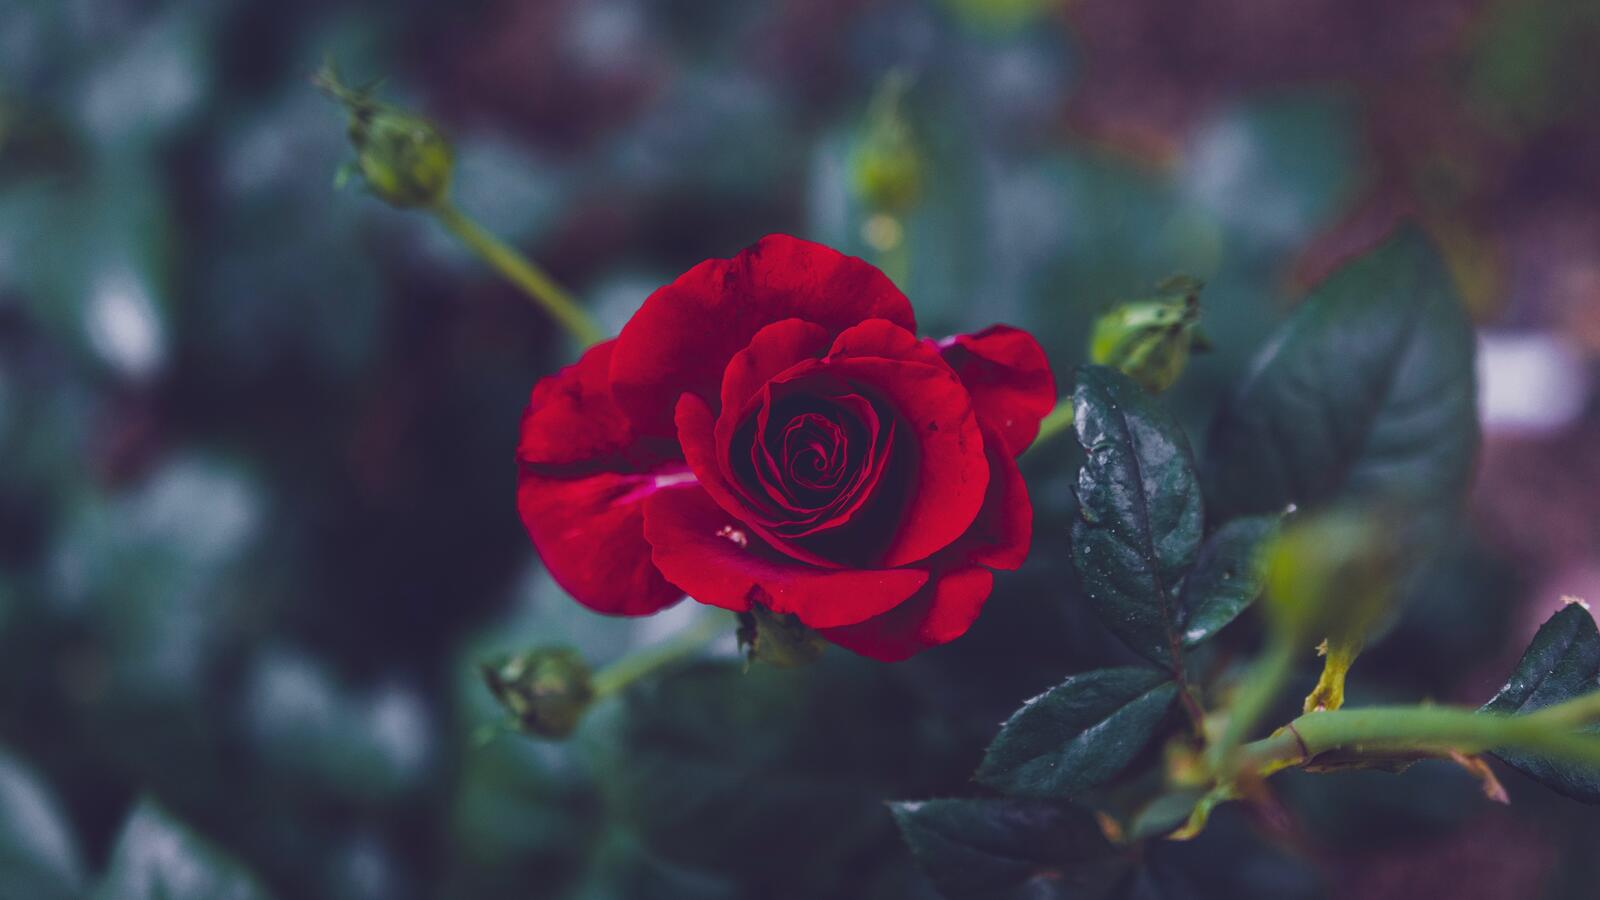 Бесплатное фото Кустарник с одинокой красной розой